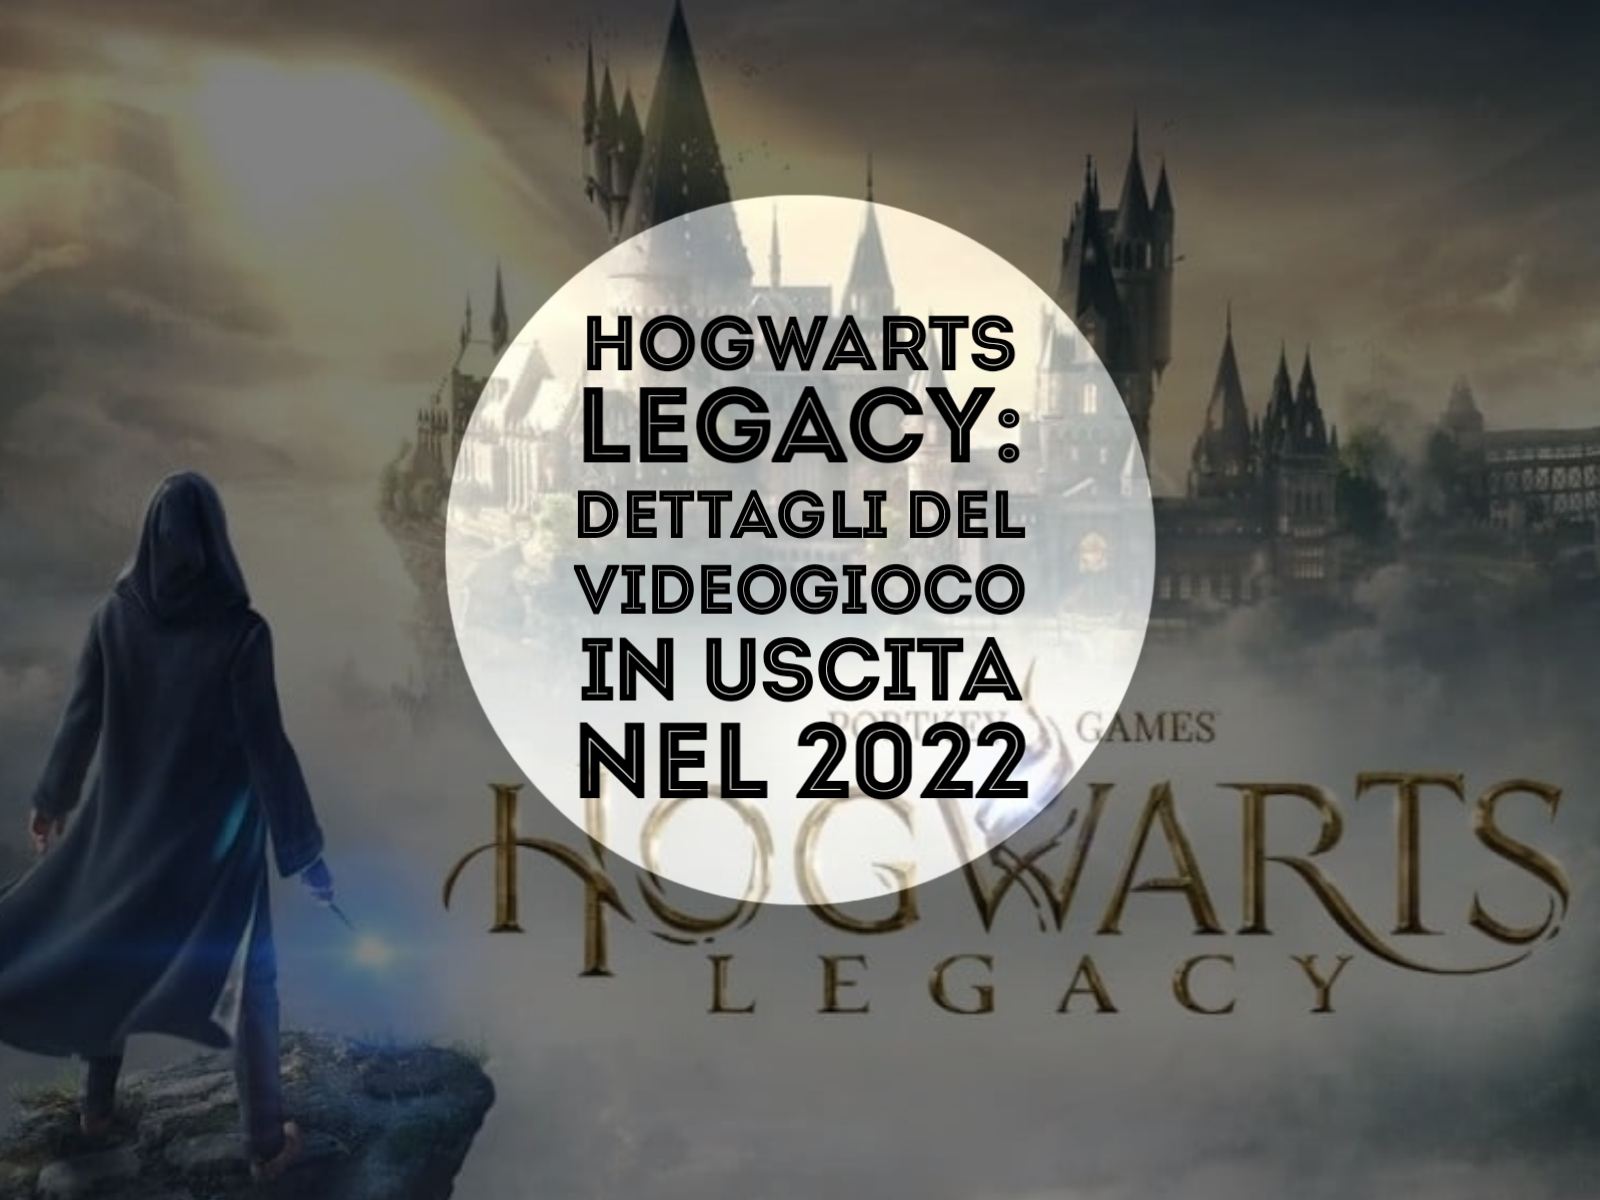 Uscita Hogwarts Legacy: date previste del videogioco